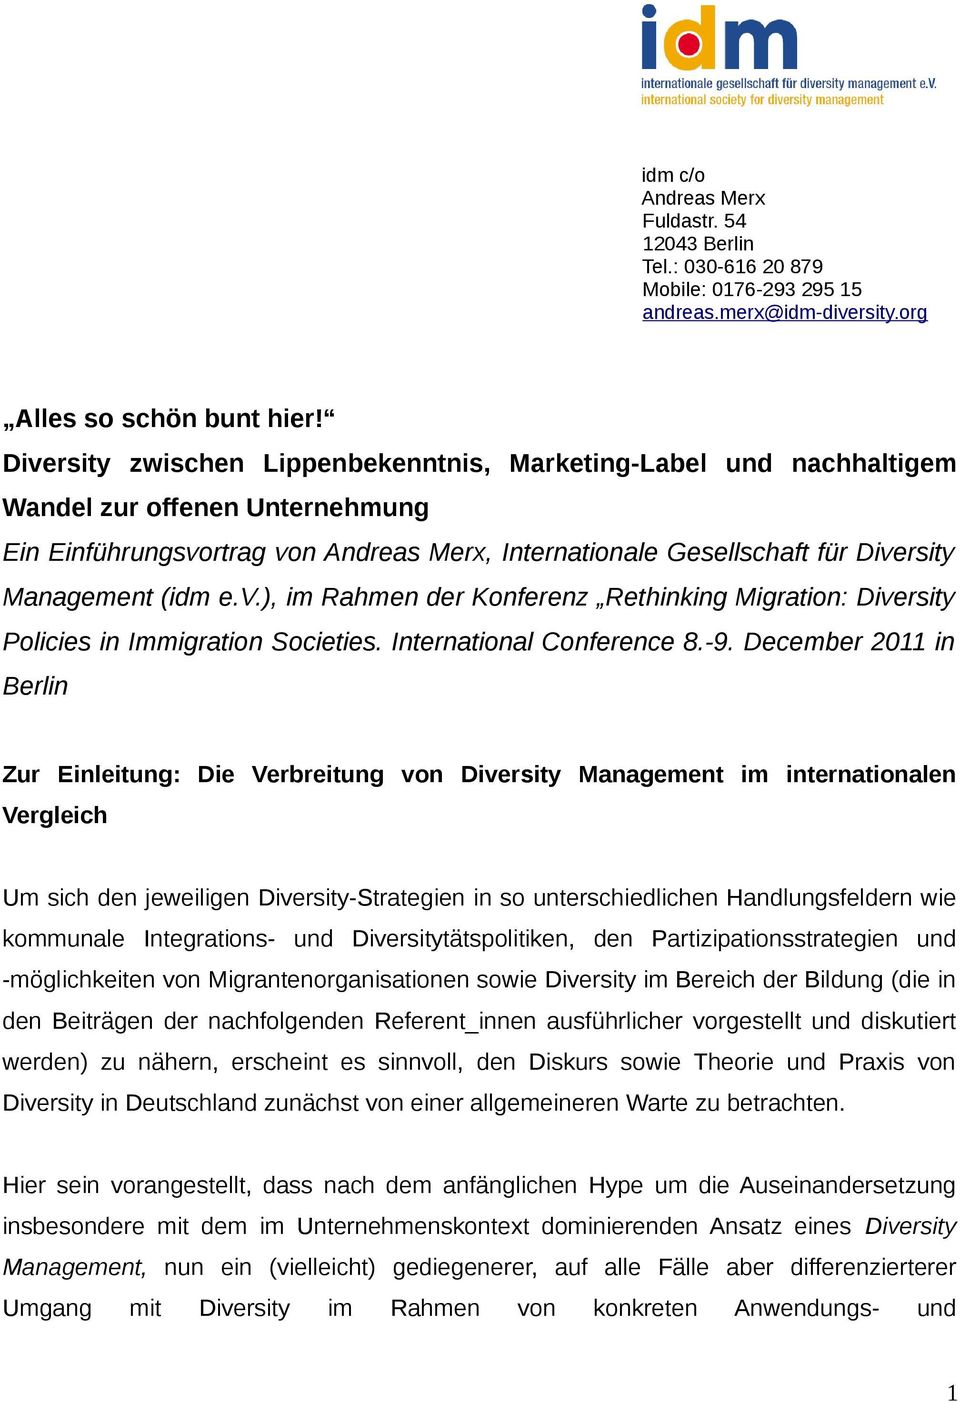 (idm e.v.), im Rahmen der Konferenz Rethinking Migration: Diversity Policies in Immigration Societies. International Conference 8.-9.